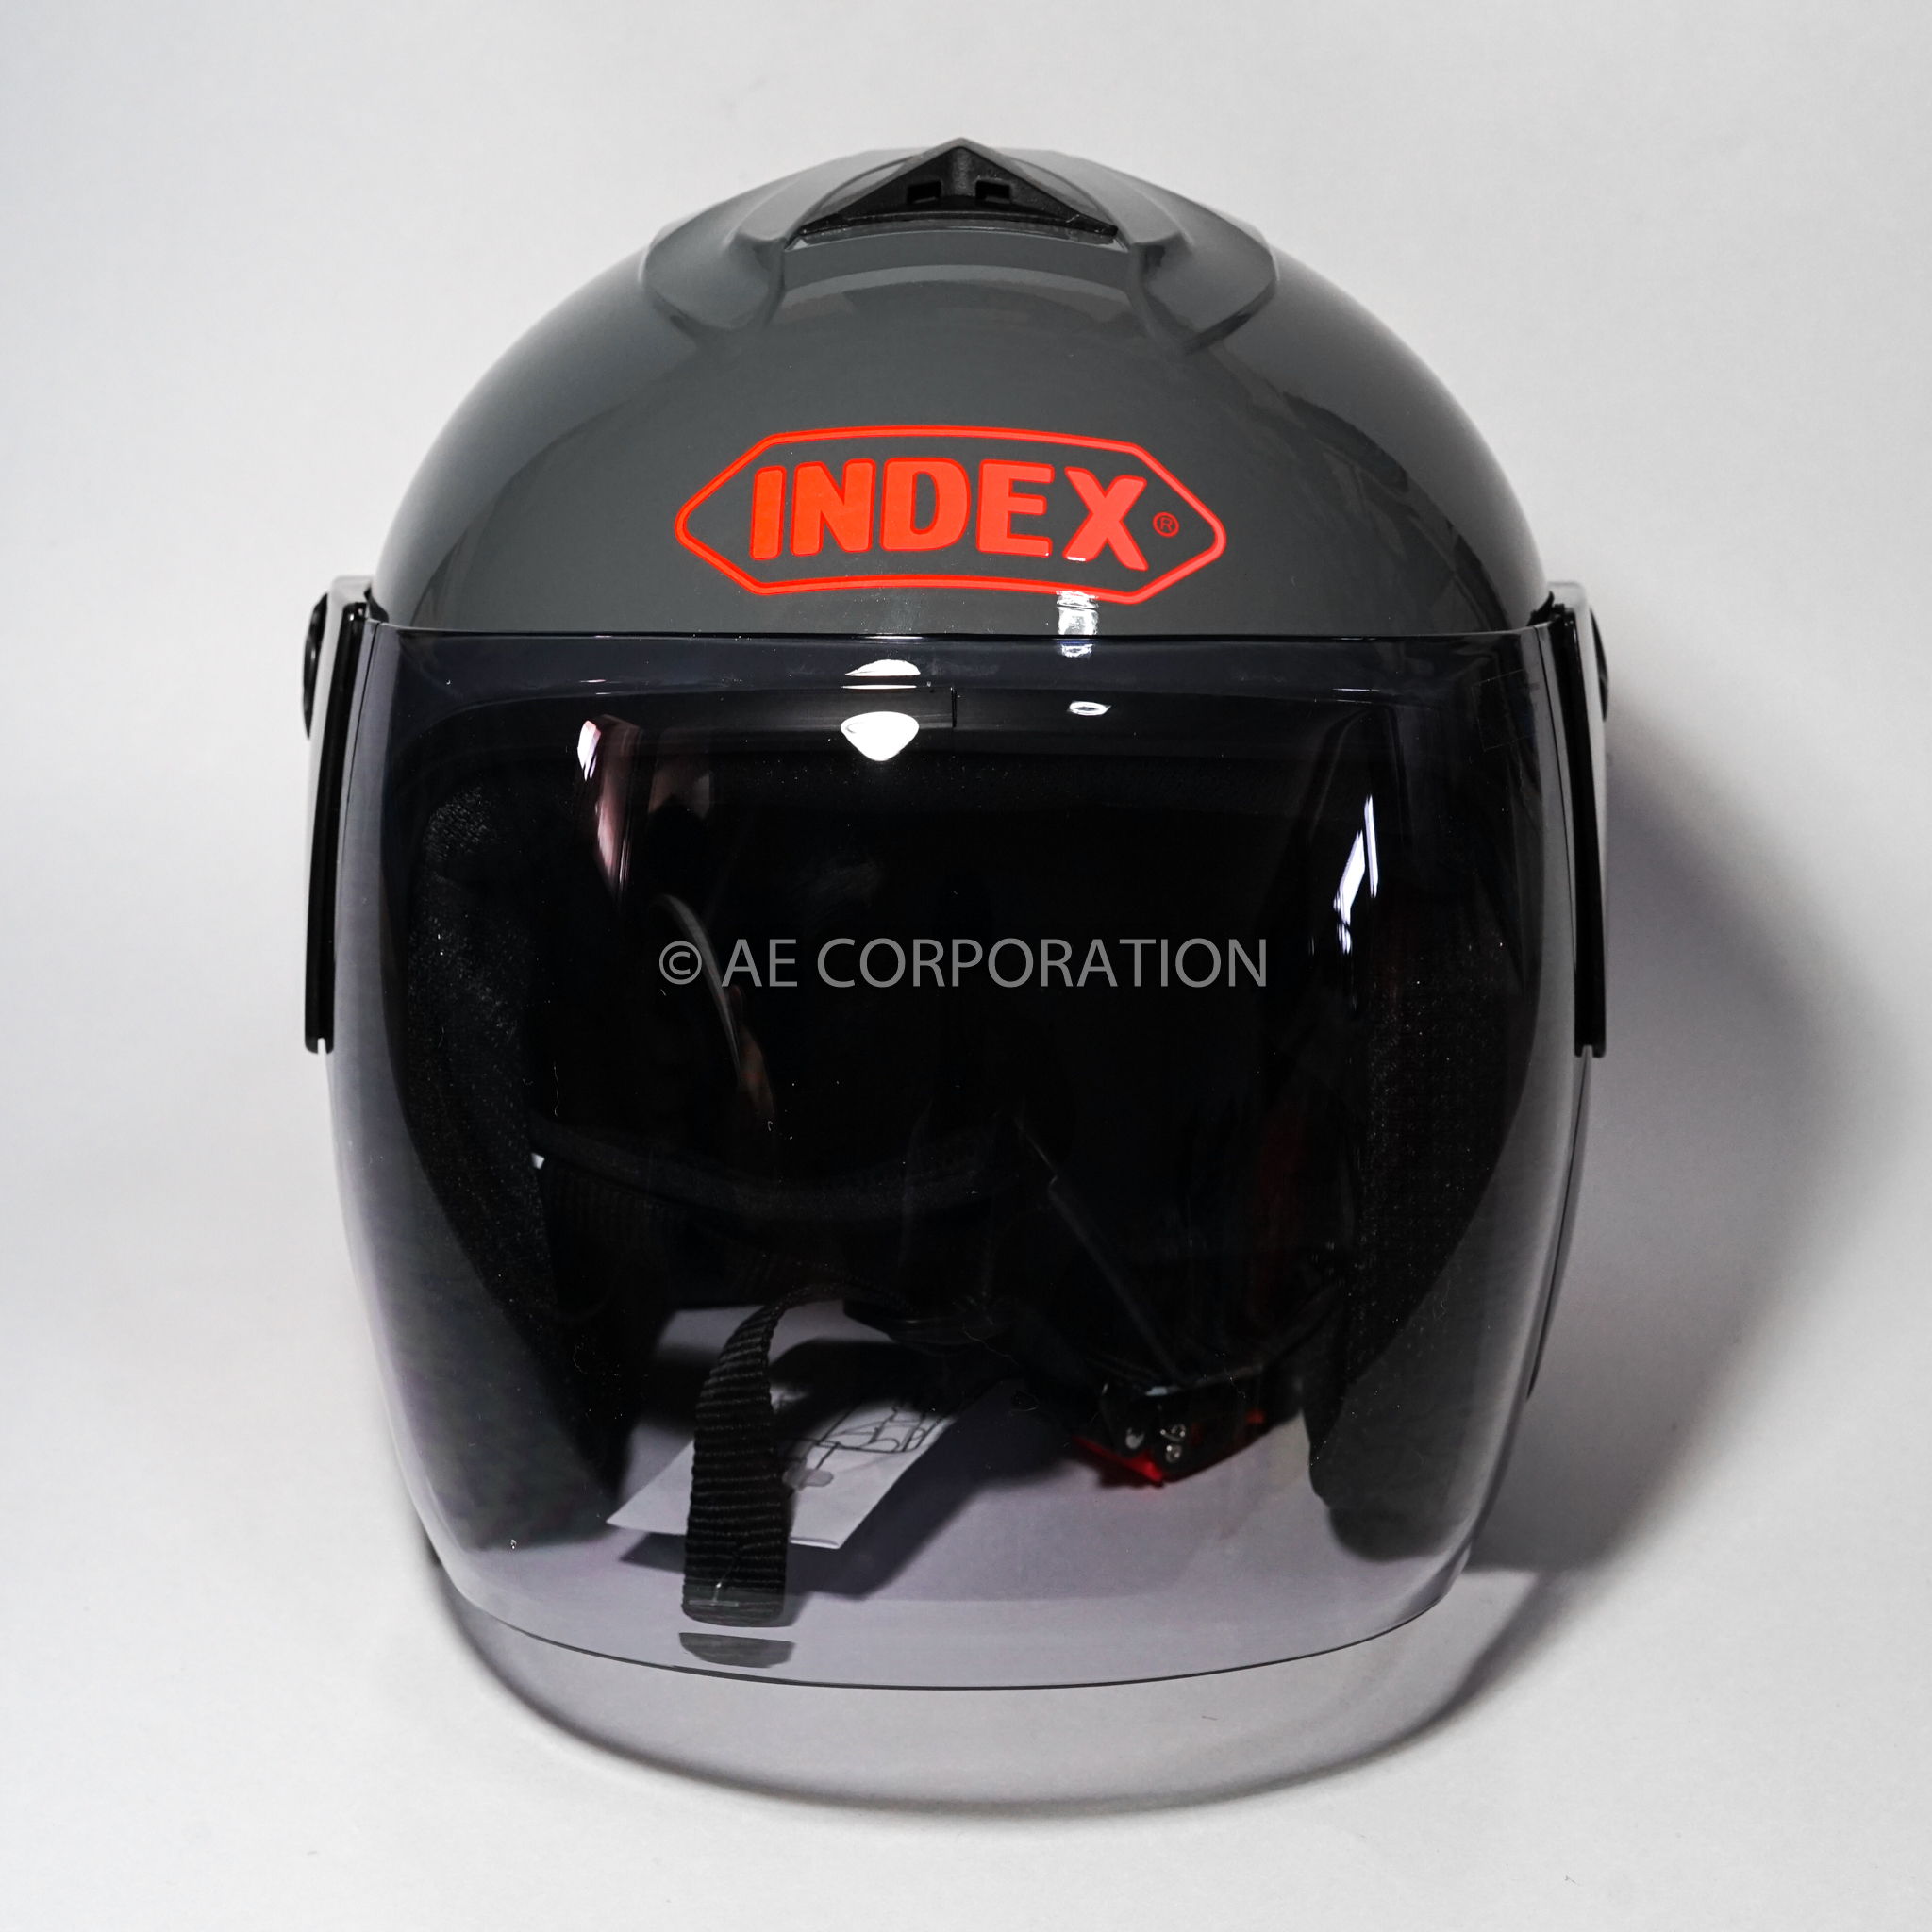 ภาพที่ให้รายละเอียดเกี่ยวกับ หมวกกันน็อค INDEX DUNK NEW หมวกกันน็อก ของแท้100% ไซต์L สีเทา 300IQ Racing